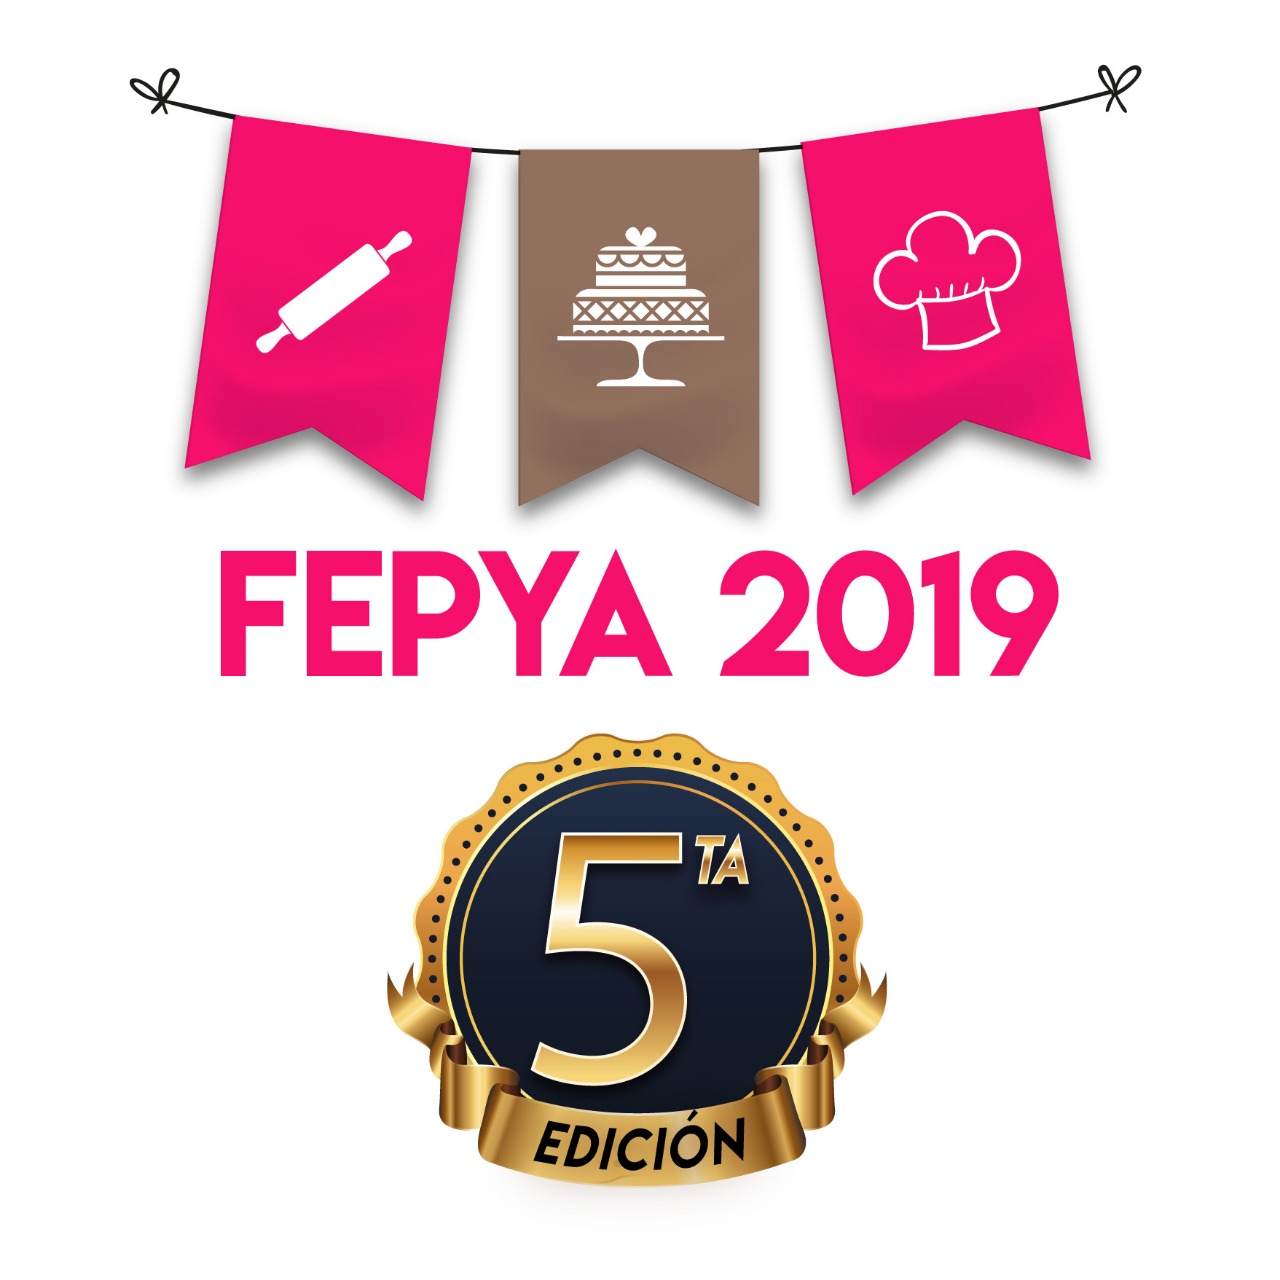 FEPYA Feria de Pastelería y Afines 2020